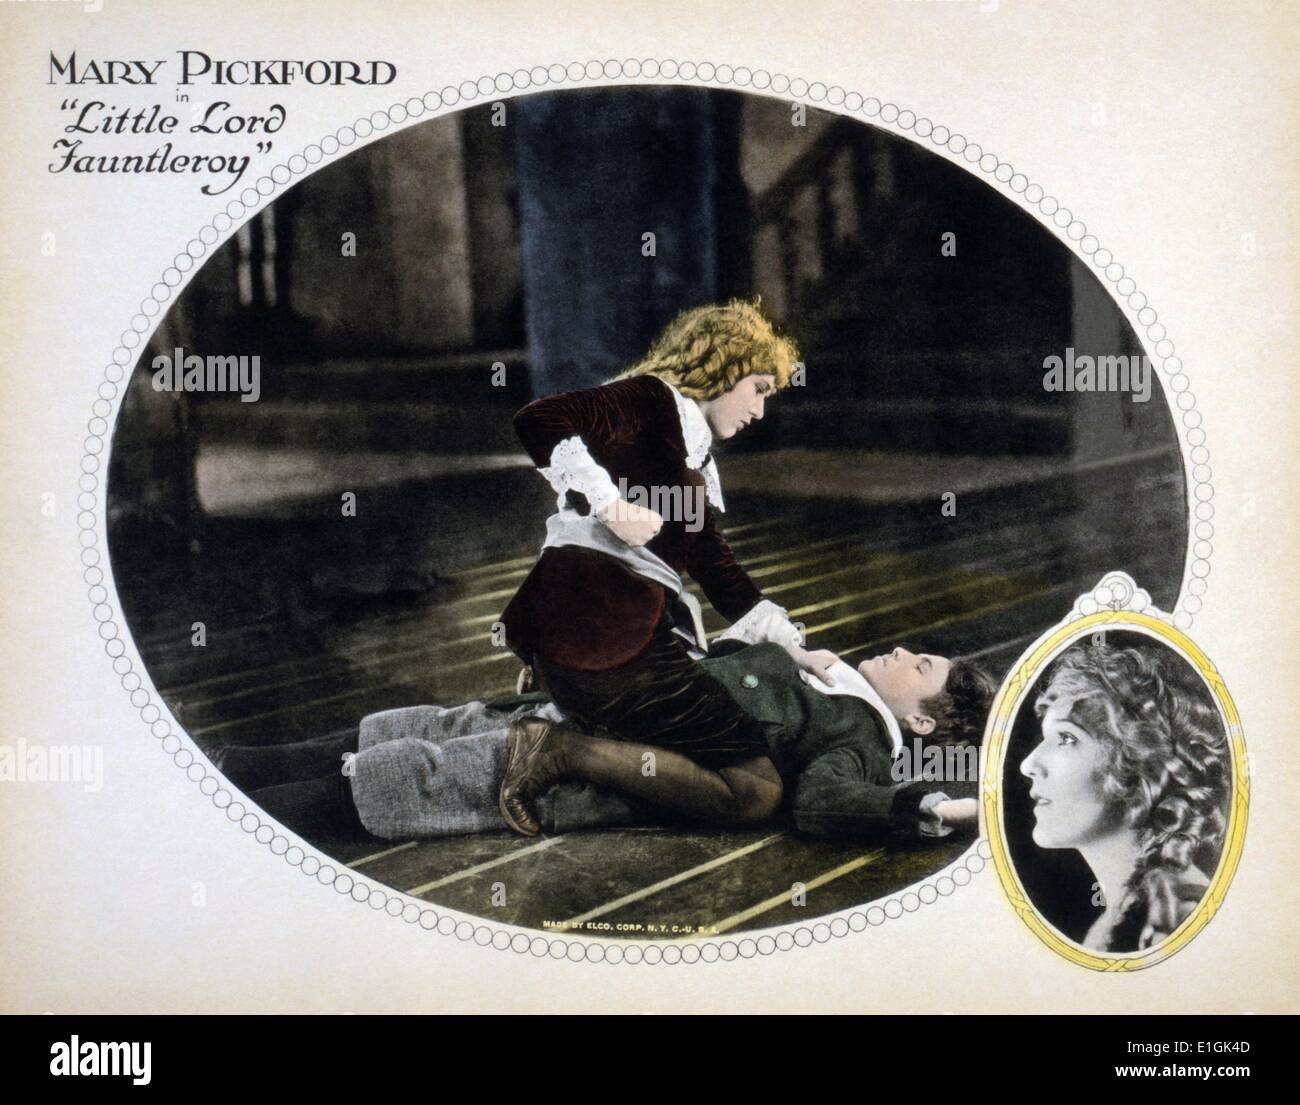 Little Lord Fauntleroy. 1921 American film dirigido por Alfred E. Green y Jack Pickford y protagonizada por Mary Pickford como Cedric Errol y viuda de Errol. La película está basada en la novela "Little Lord Fauntleroy (1886) por Frances Hodgson Burnett Foto de stock